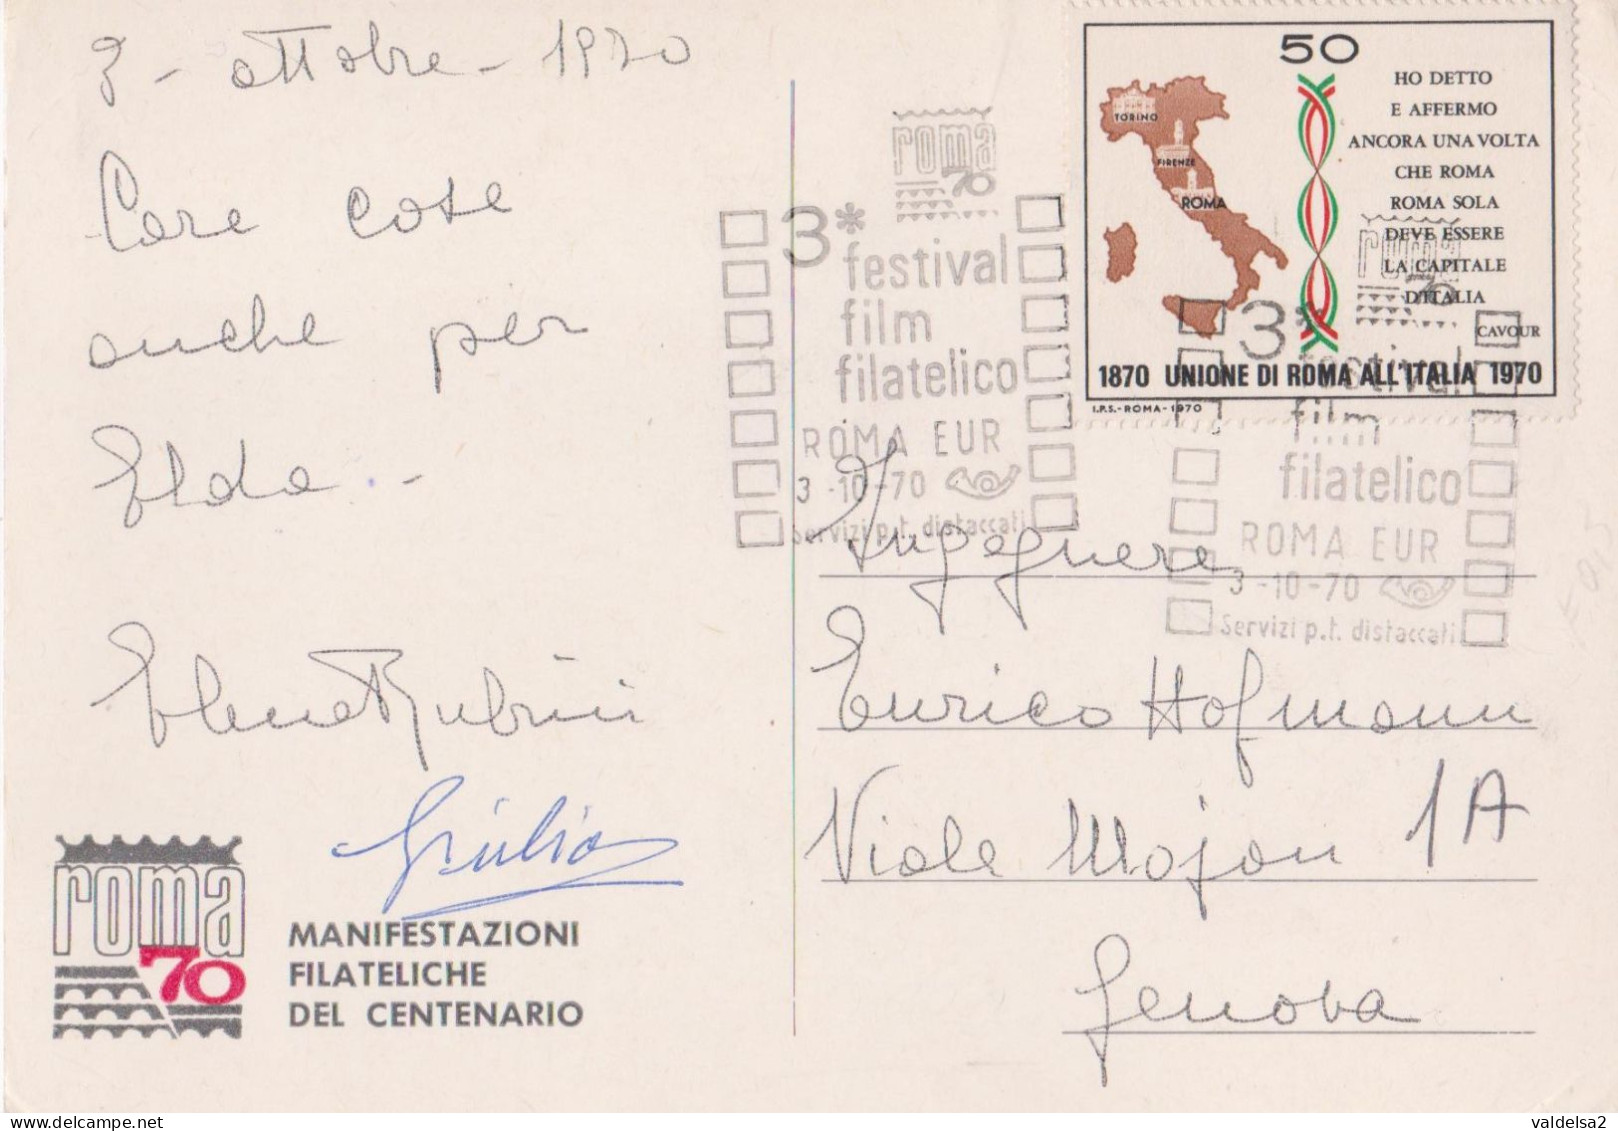 ROMA EUR - PALAZZO DEI CONGRESSI - MANIFESTAZIONI FILATELICHE DEL CENTENARIO 3/10/1970 - ANNULLO SPECIALE - Expositions